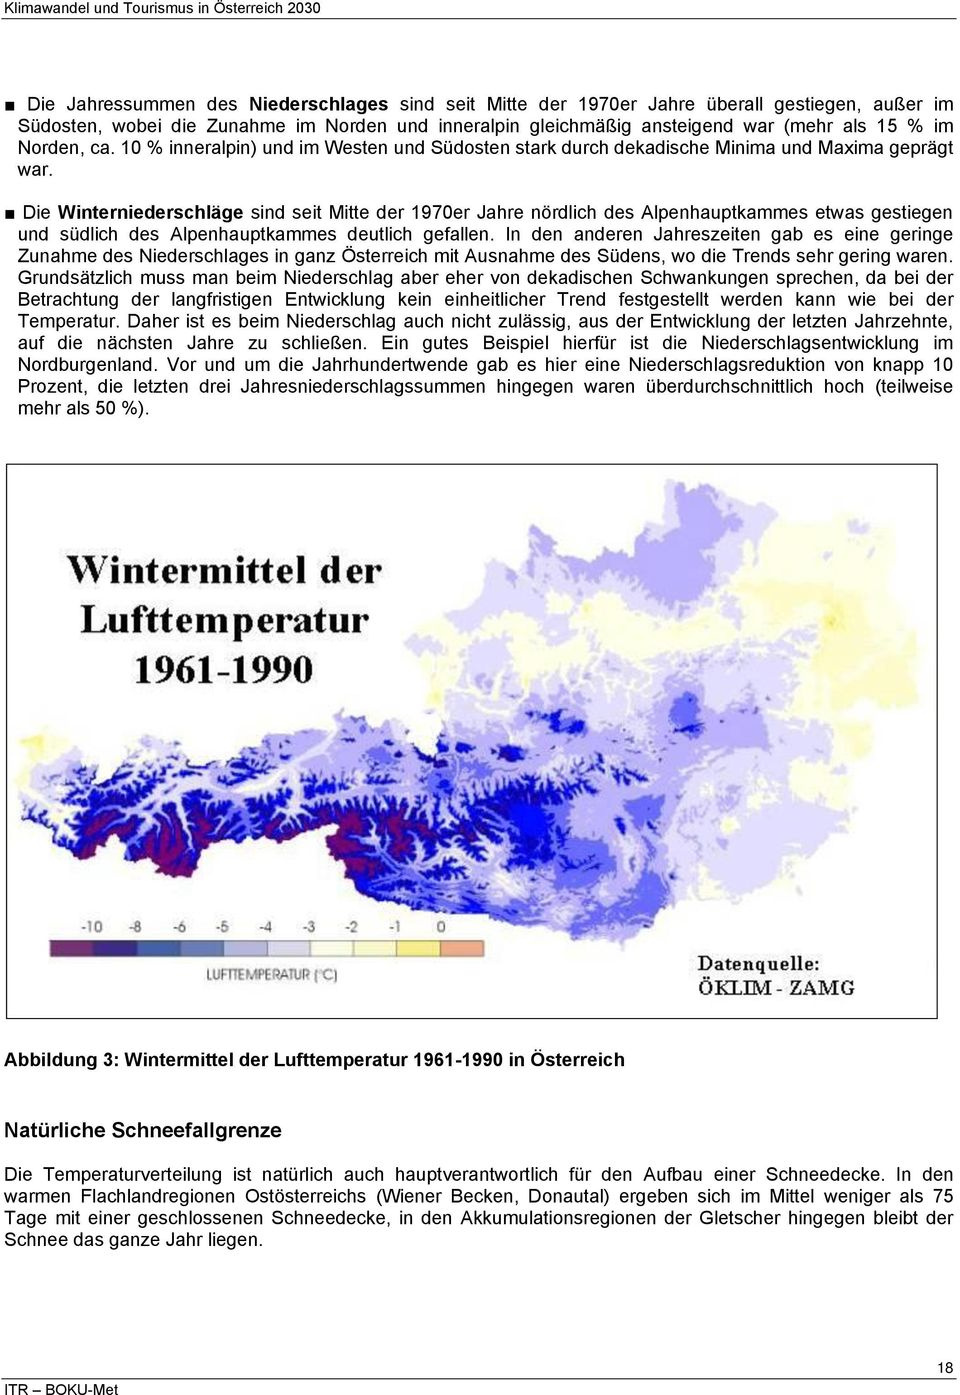 Die Winterniederschläge sind seit Mitte der 1970er Jahre nördlich des Alpenhauptkammes etwas gestiegen und südlich des Alpenhauptkammes deutlich gefallen.